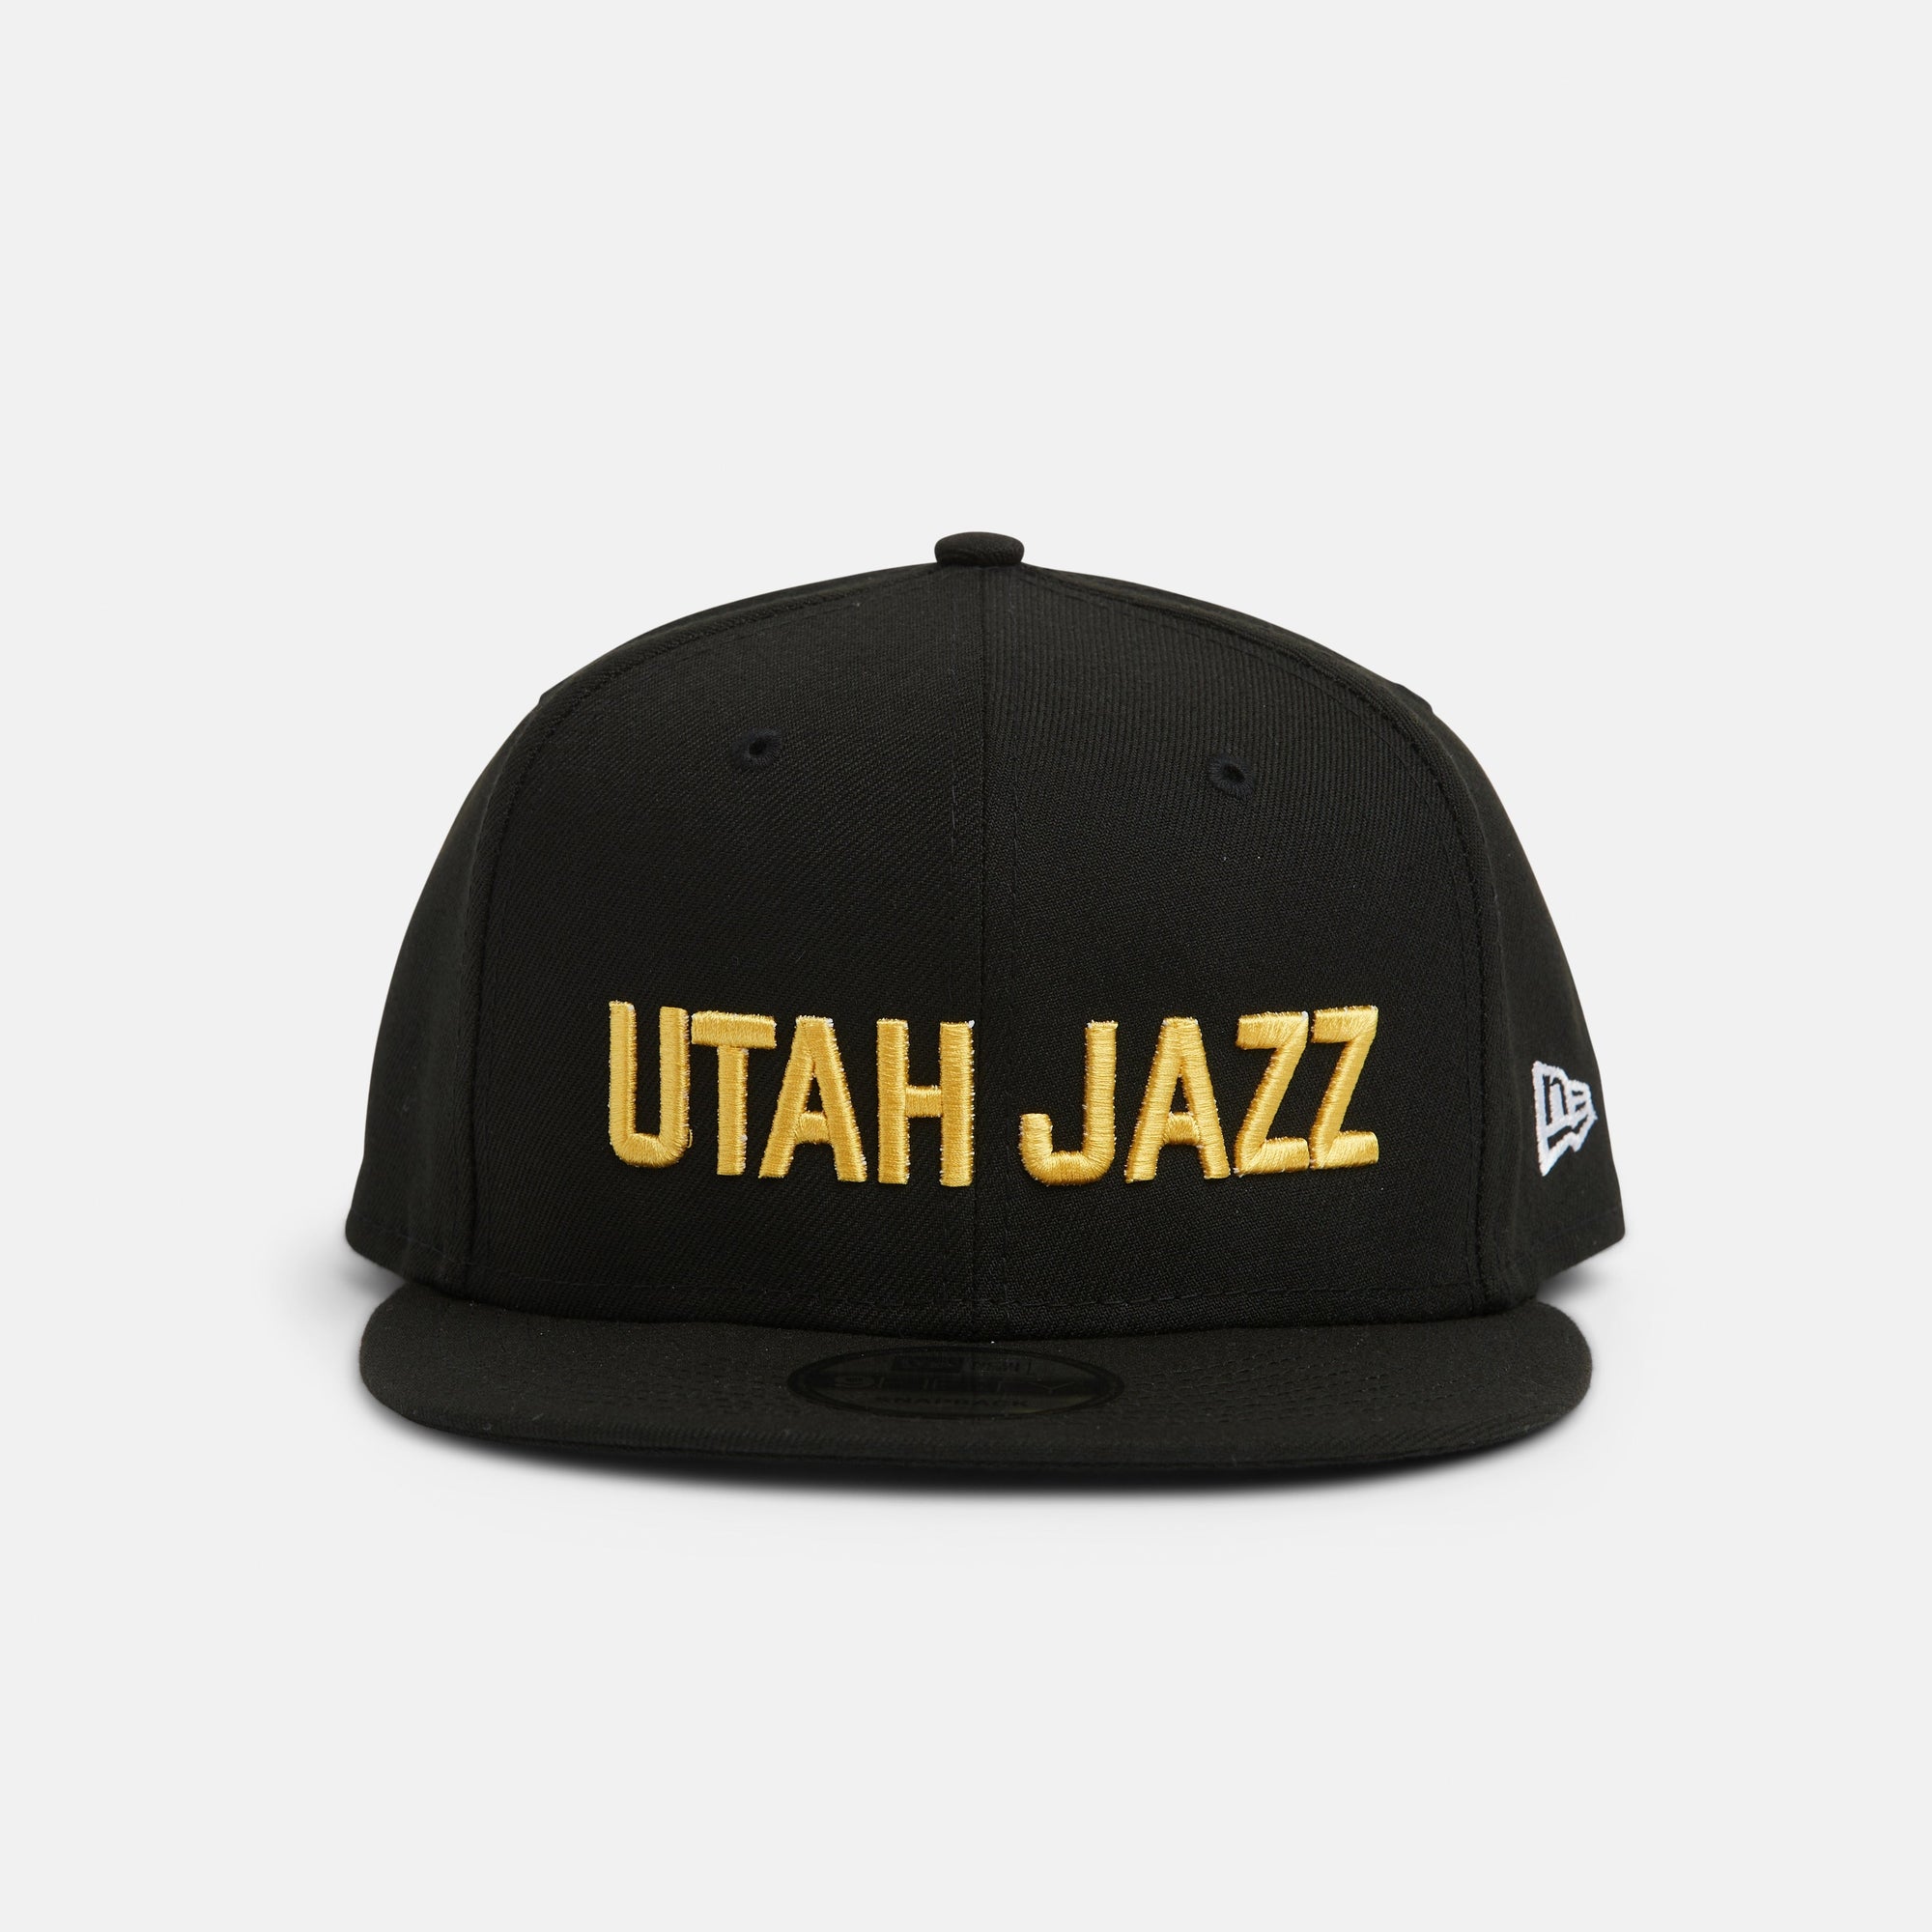 Shaky Warrior - - Black - Primary - New Era – Utah Jazz Team Store